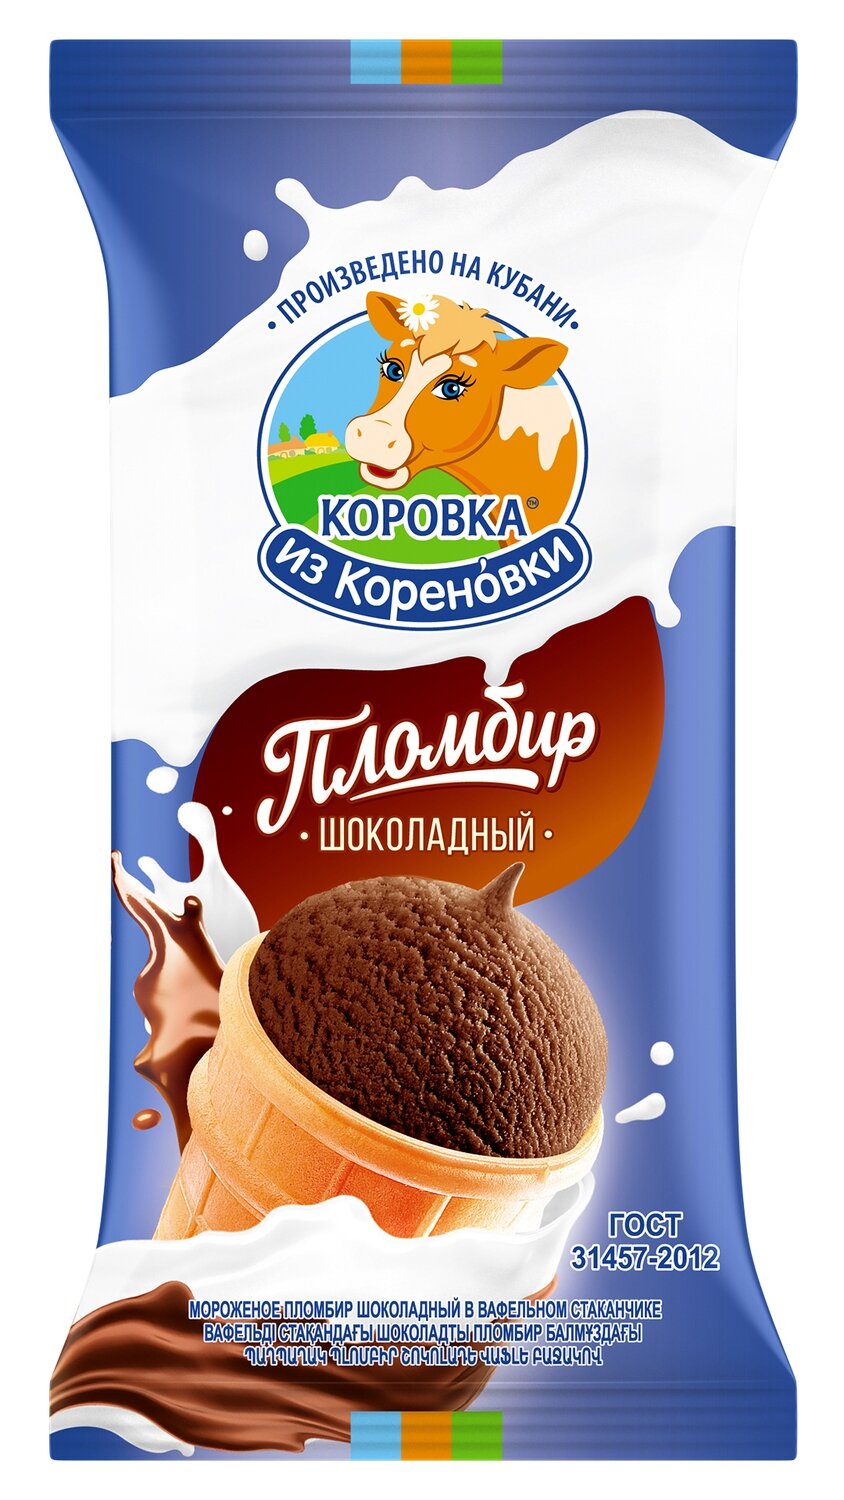 Мороженое коровка из Кореновки